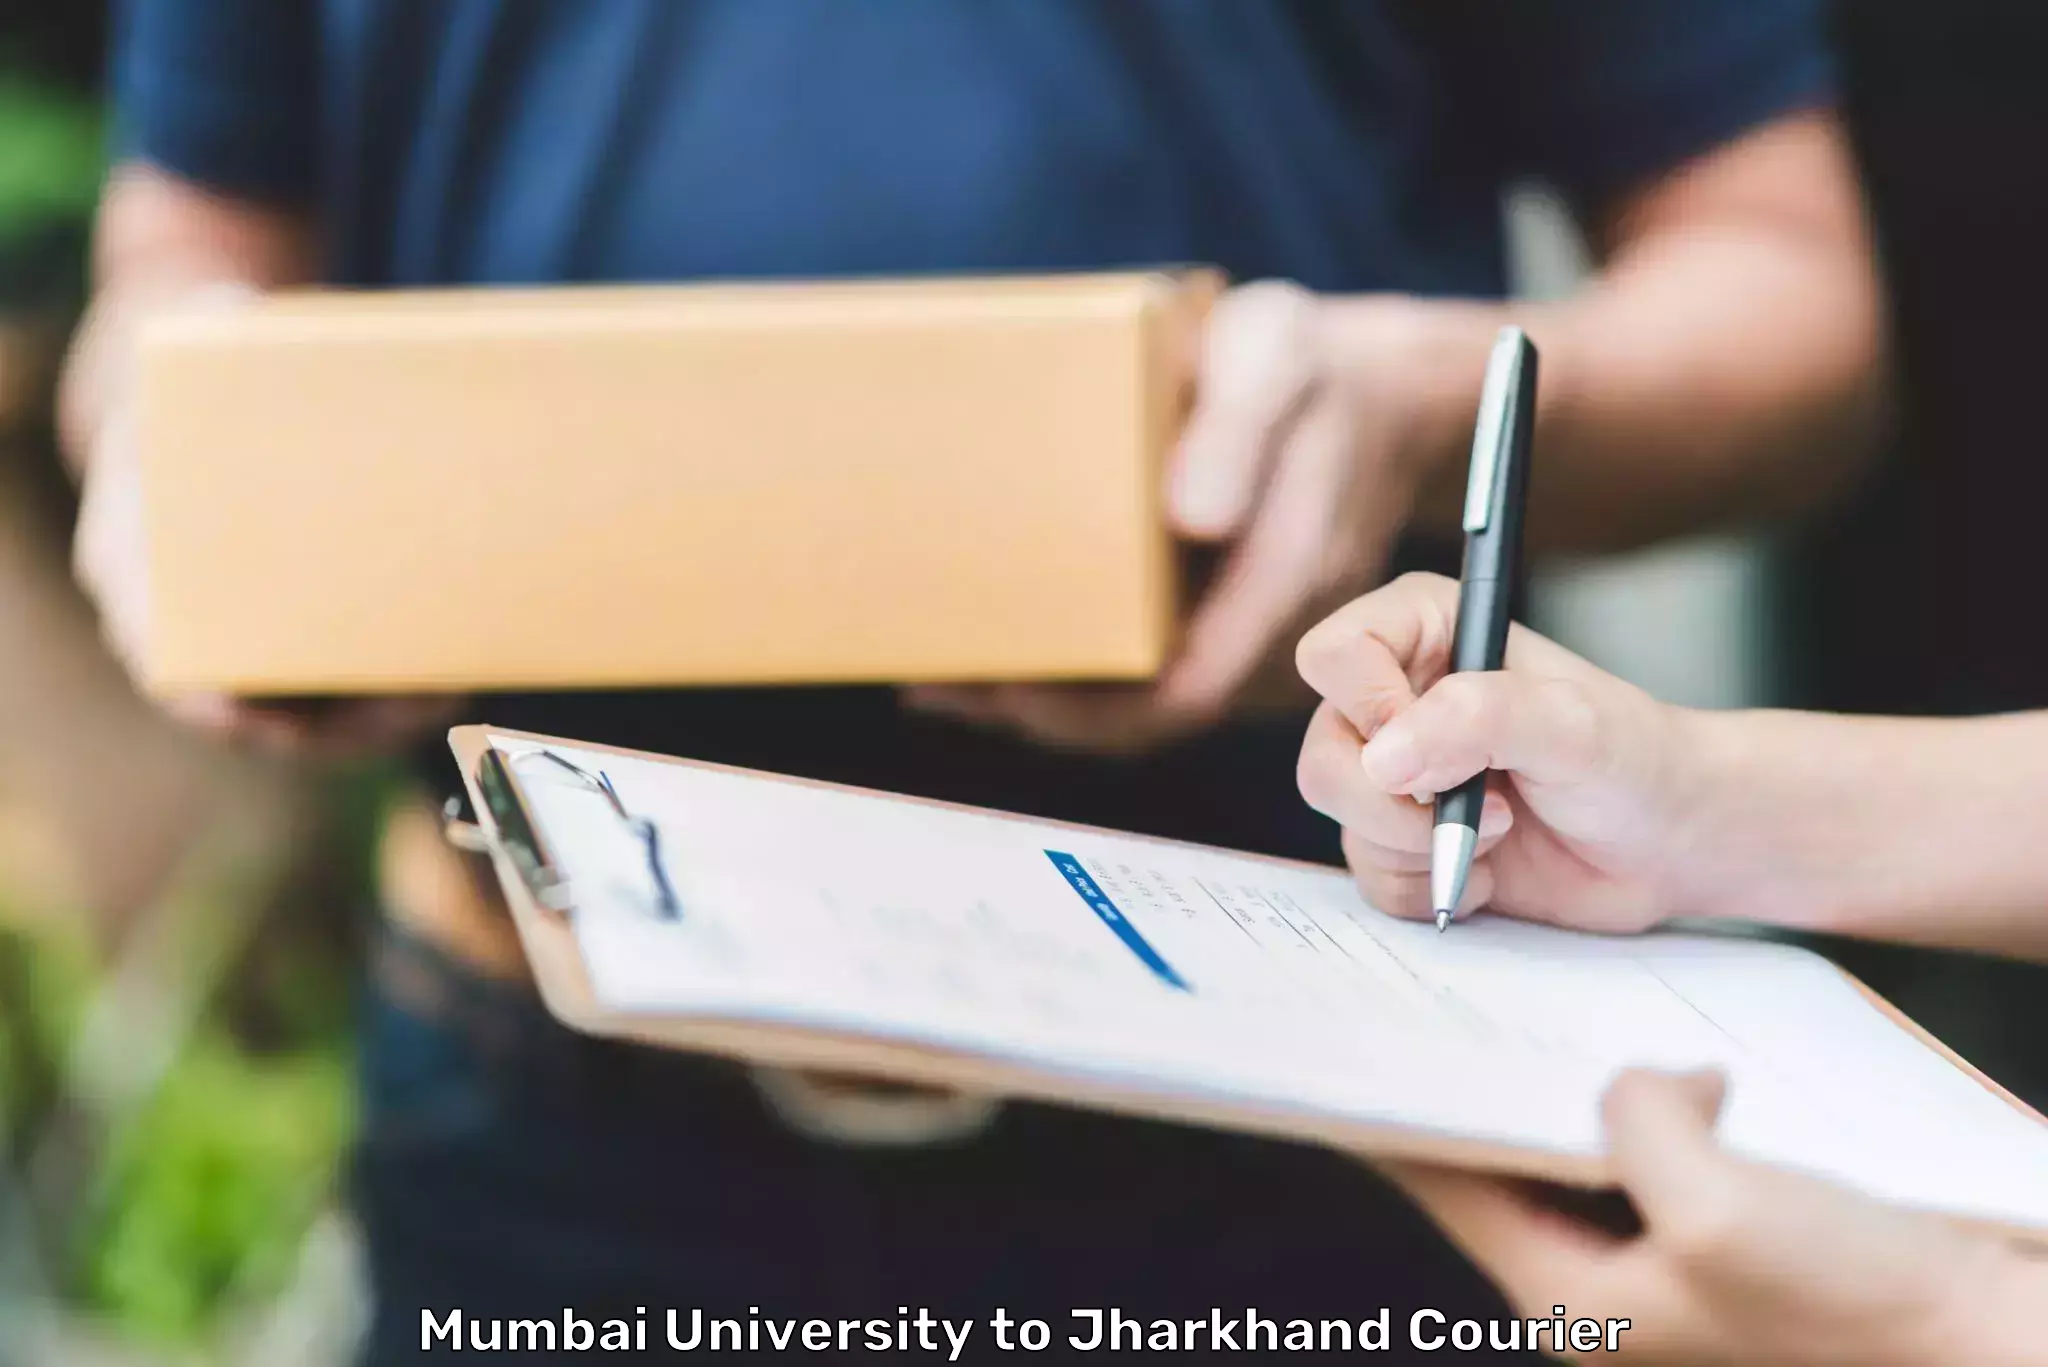 Custom courier solutions Mumbai University to Koderma